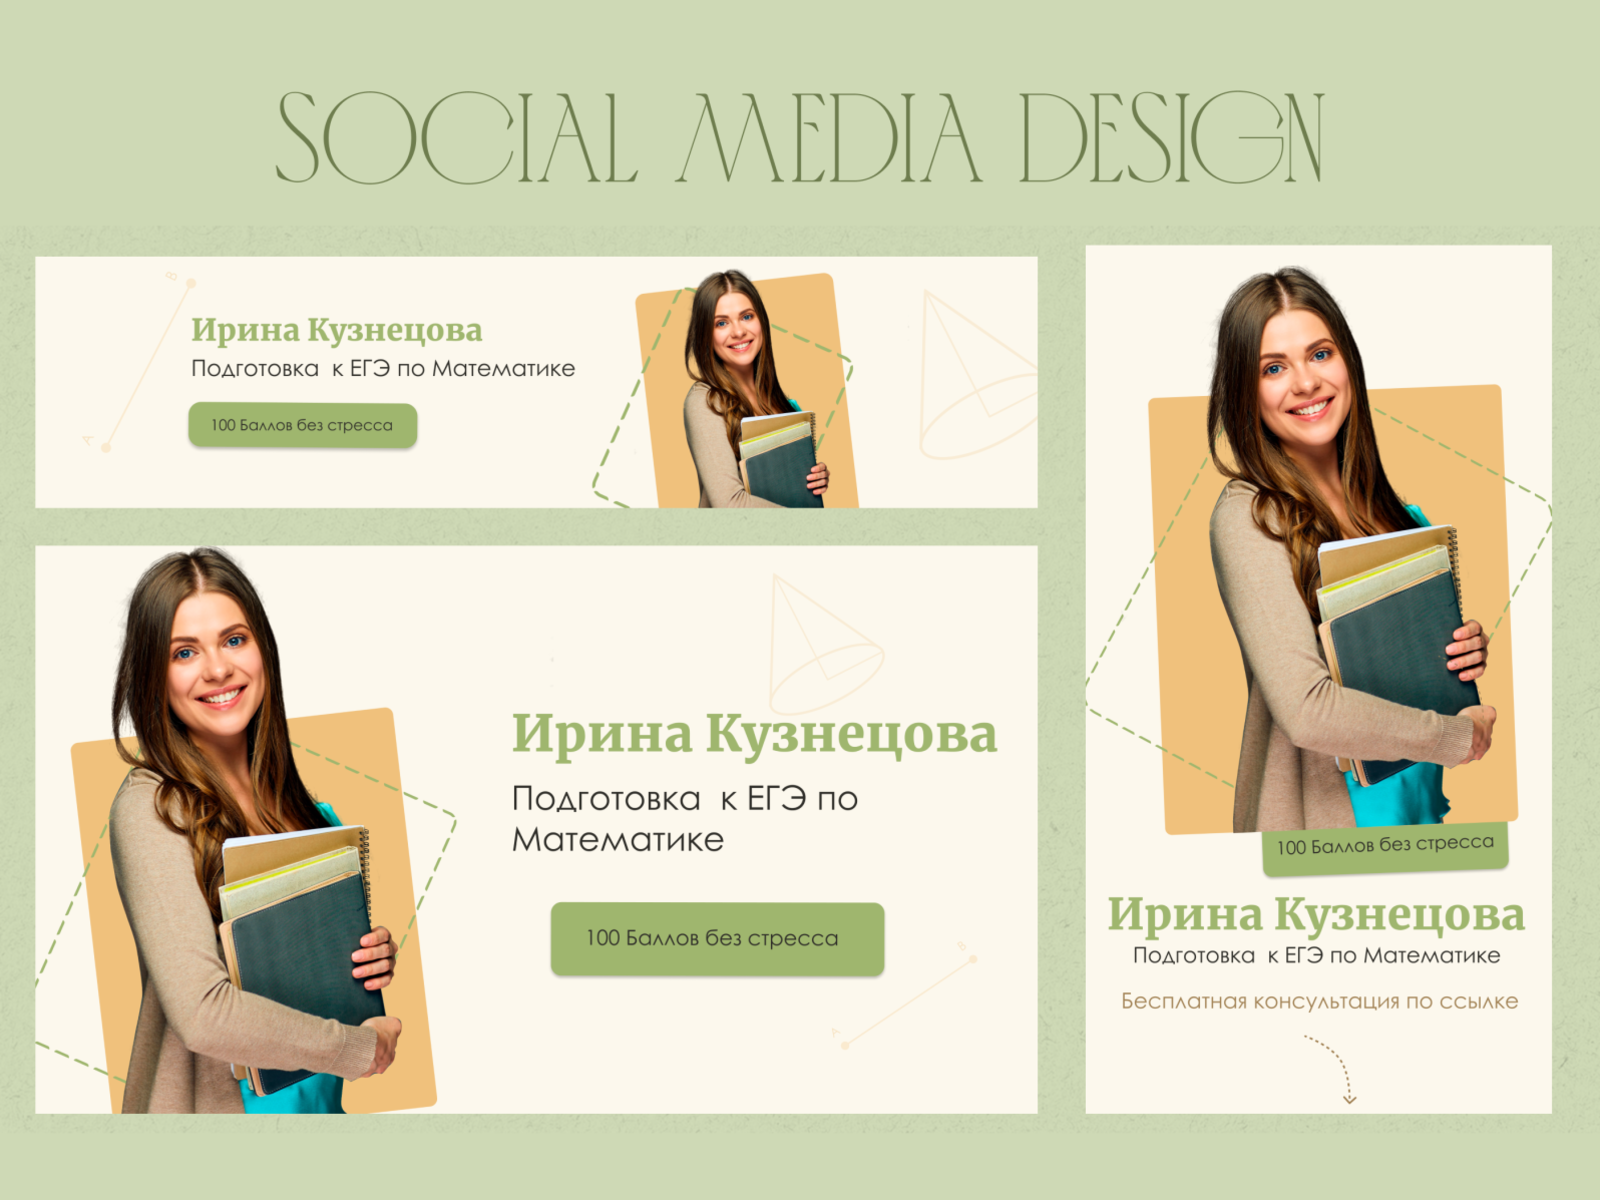 Дизайн социальных сетей для репетитора по матиматике design graphic design social media